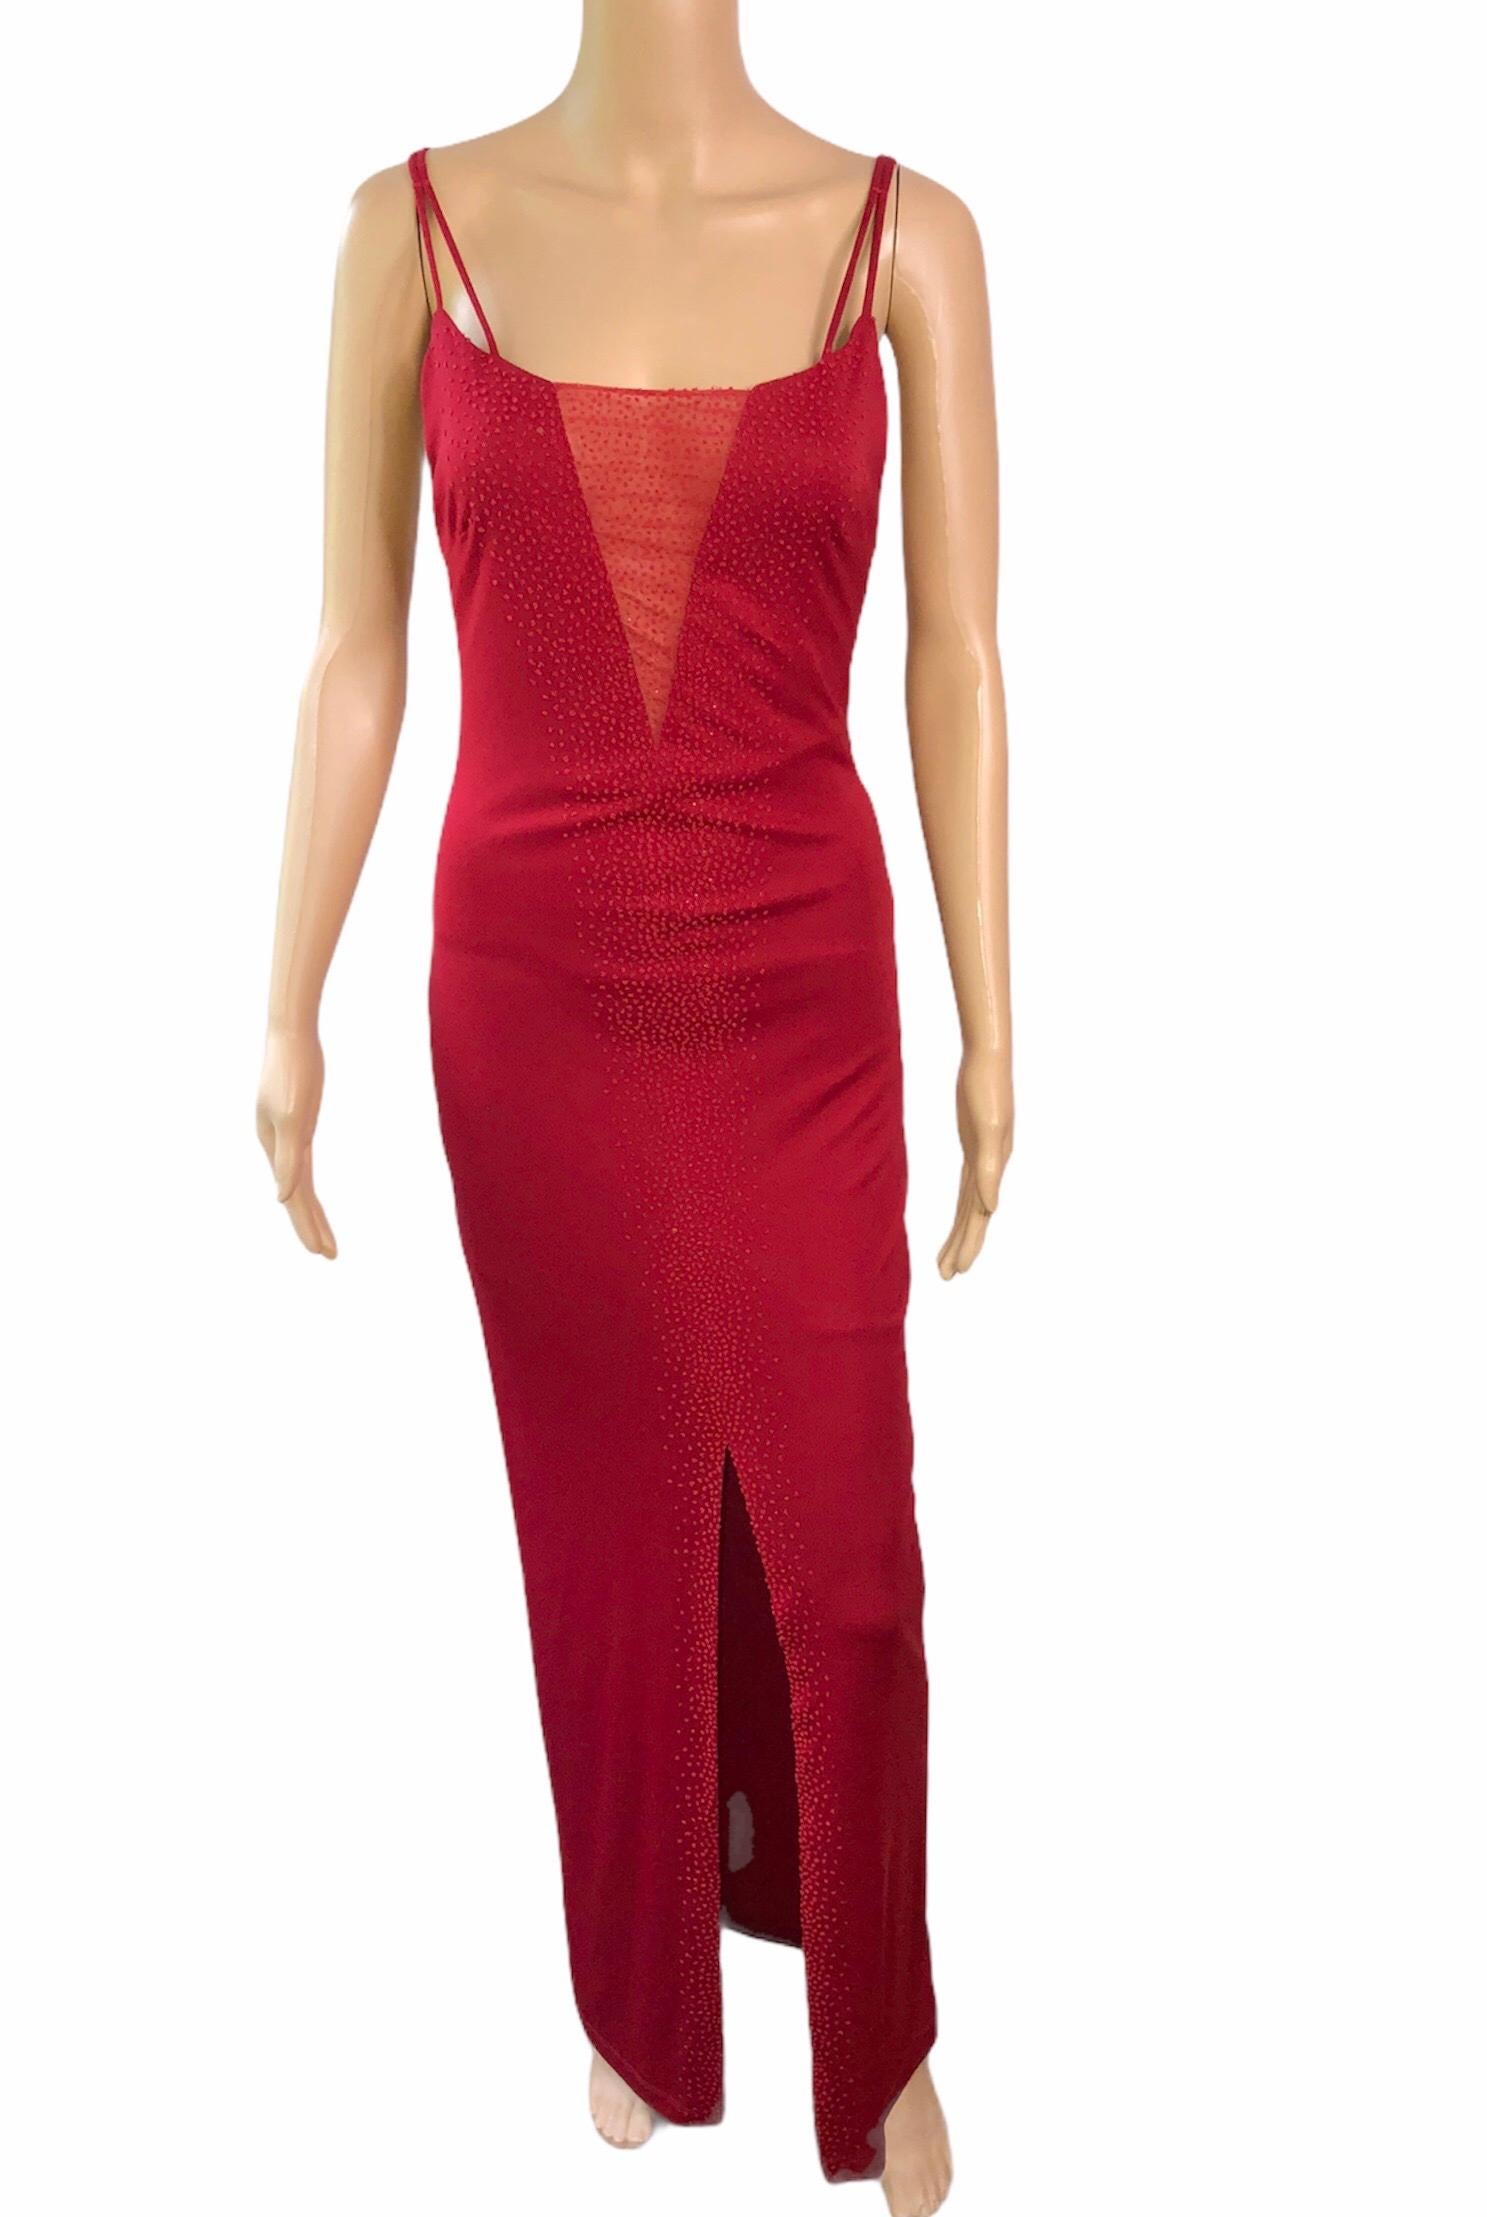 Rouge Gianni Versace Robe de soirée rouge à empiècements transparents et ornements vintage, années 1990 en vente